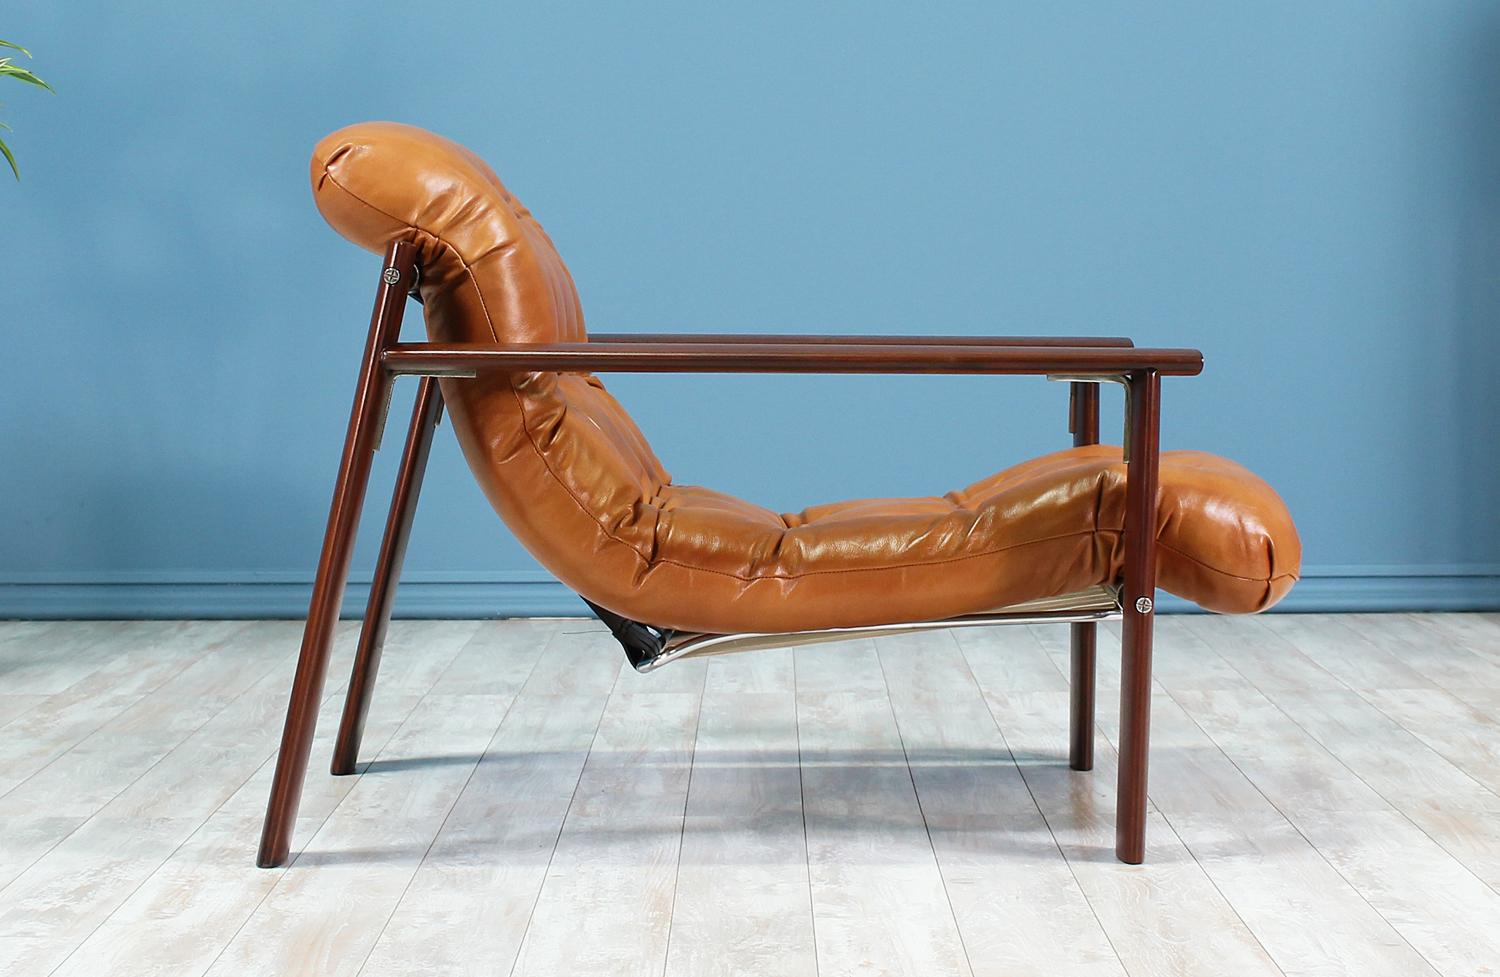 MP-129 Chaise longue conçue et fabriquée par Percival Lafer au Brésil dans les années 1970. Cette chaise a une structure en bois d'acajou massif avec un soubassement en acier chromé et de nouvelles sangles en cuir qui soutiennent le coussin